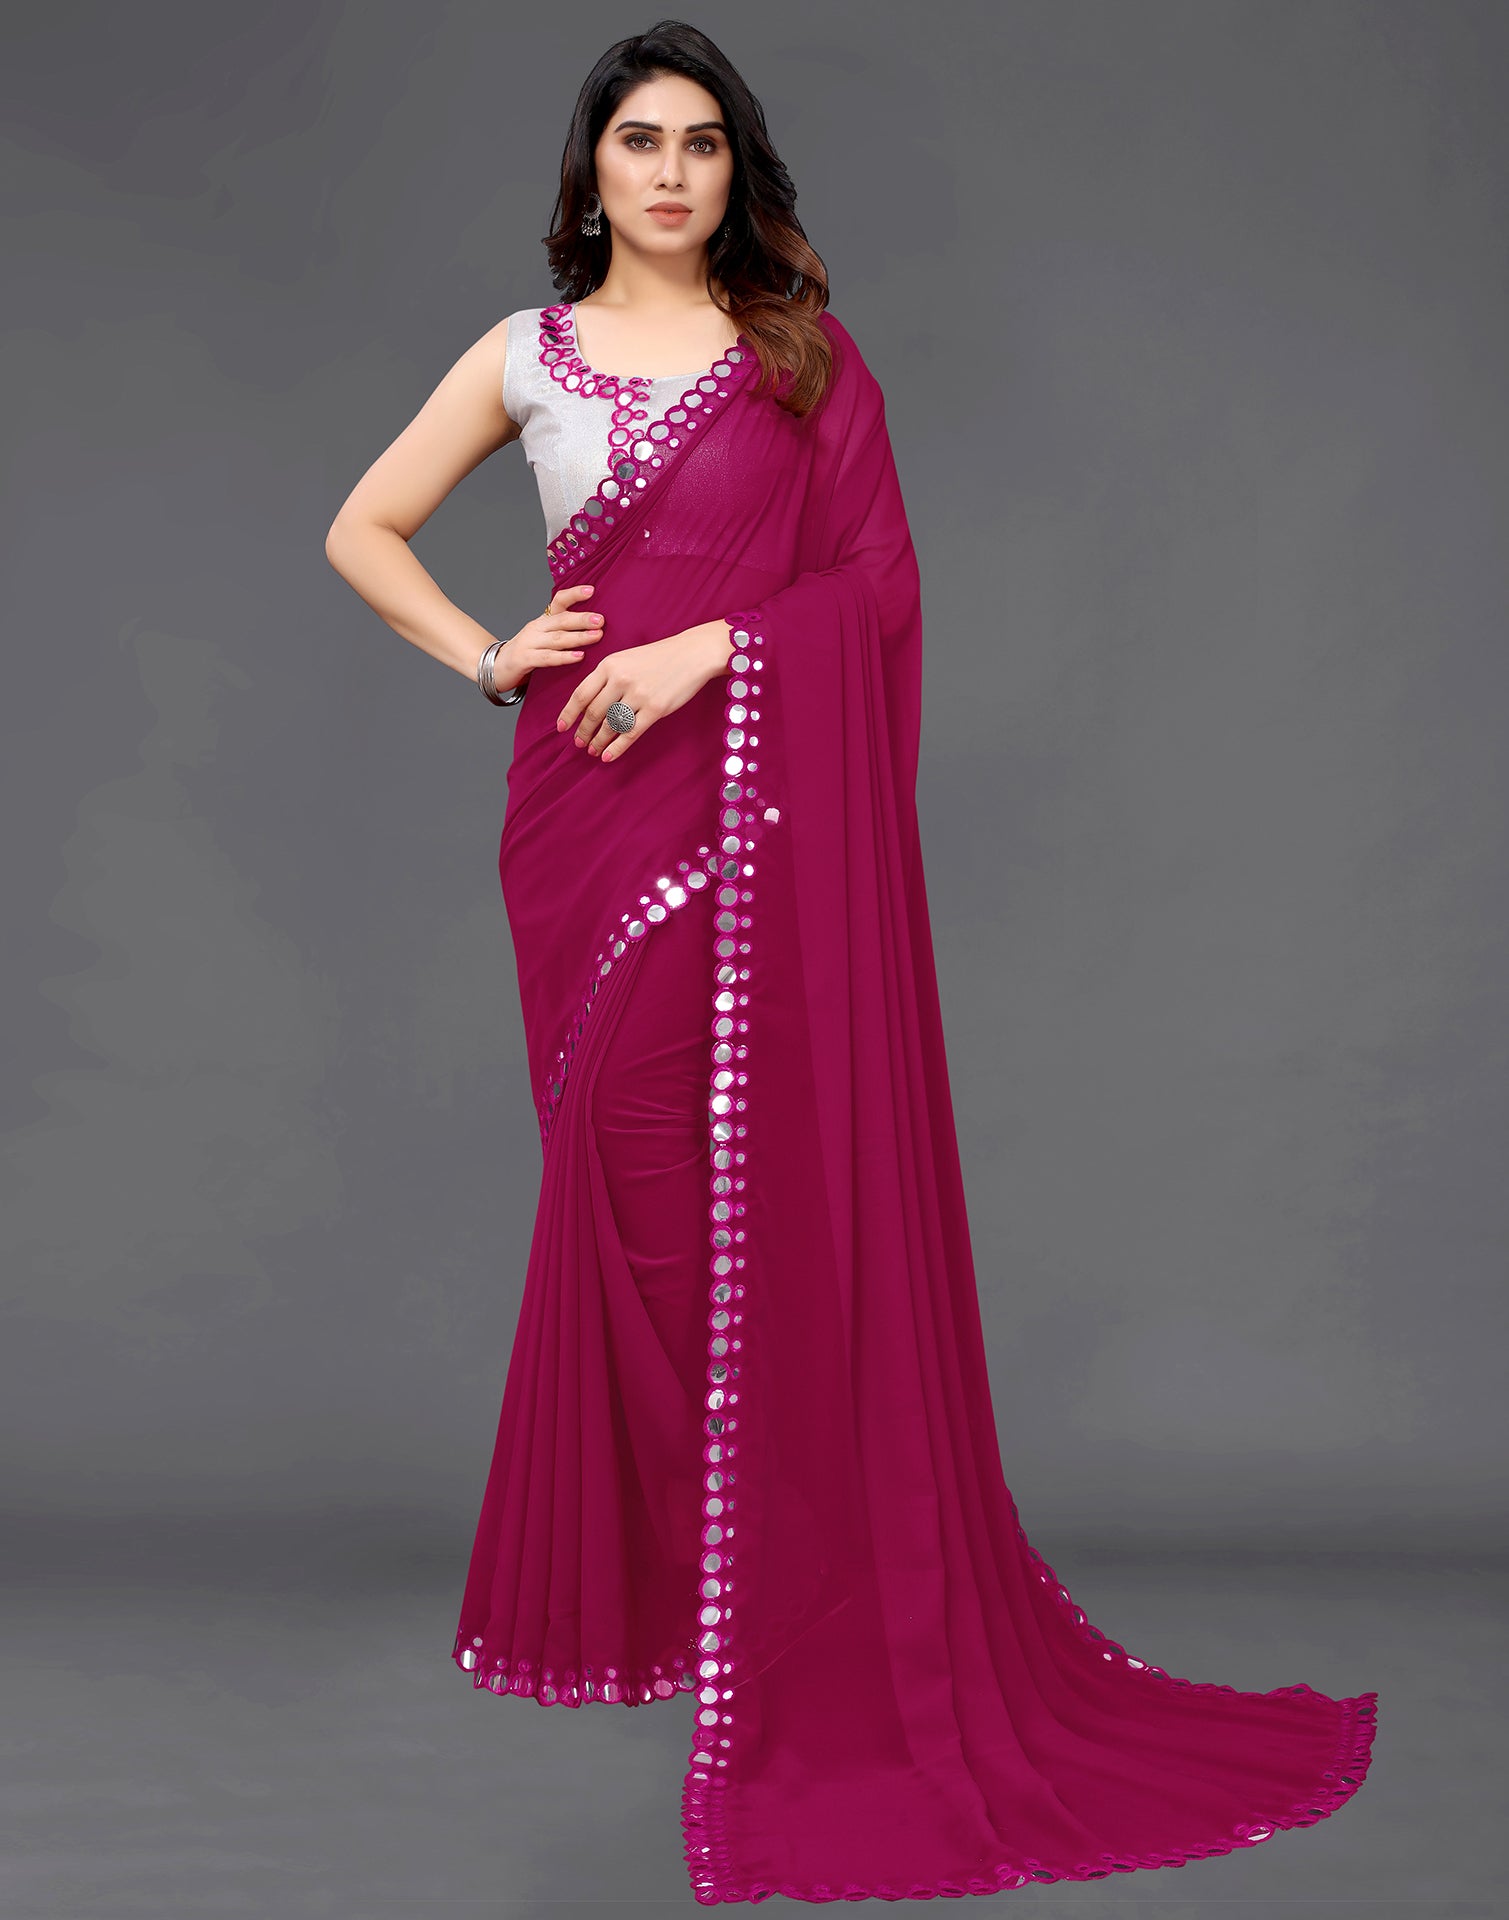 25+ Golden Mirror Work Sarees for Brides & Bridesmaids | Mirror work saree,  Saree designs, Saree draping styles